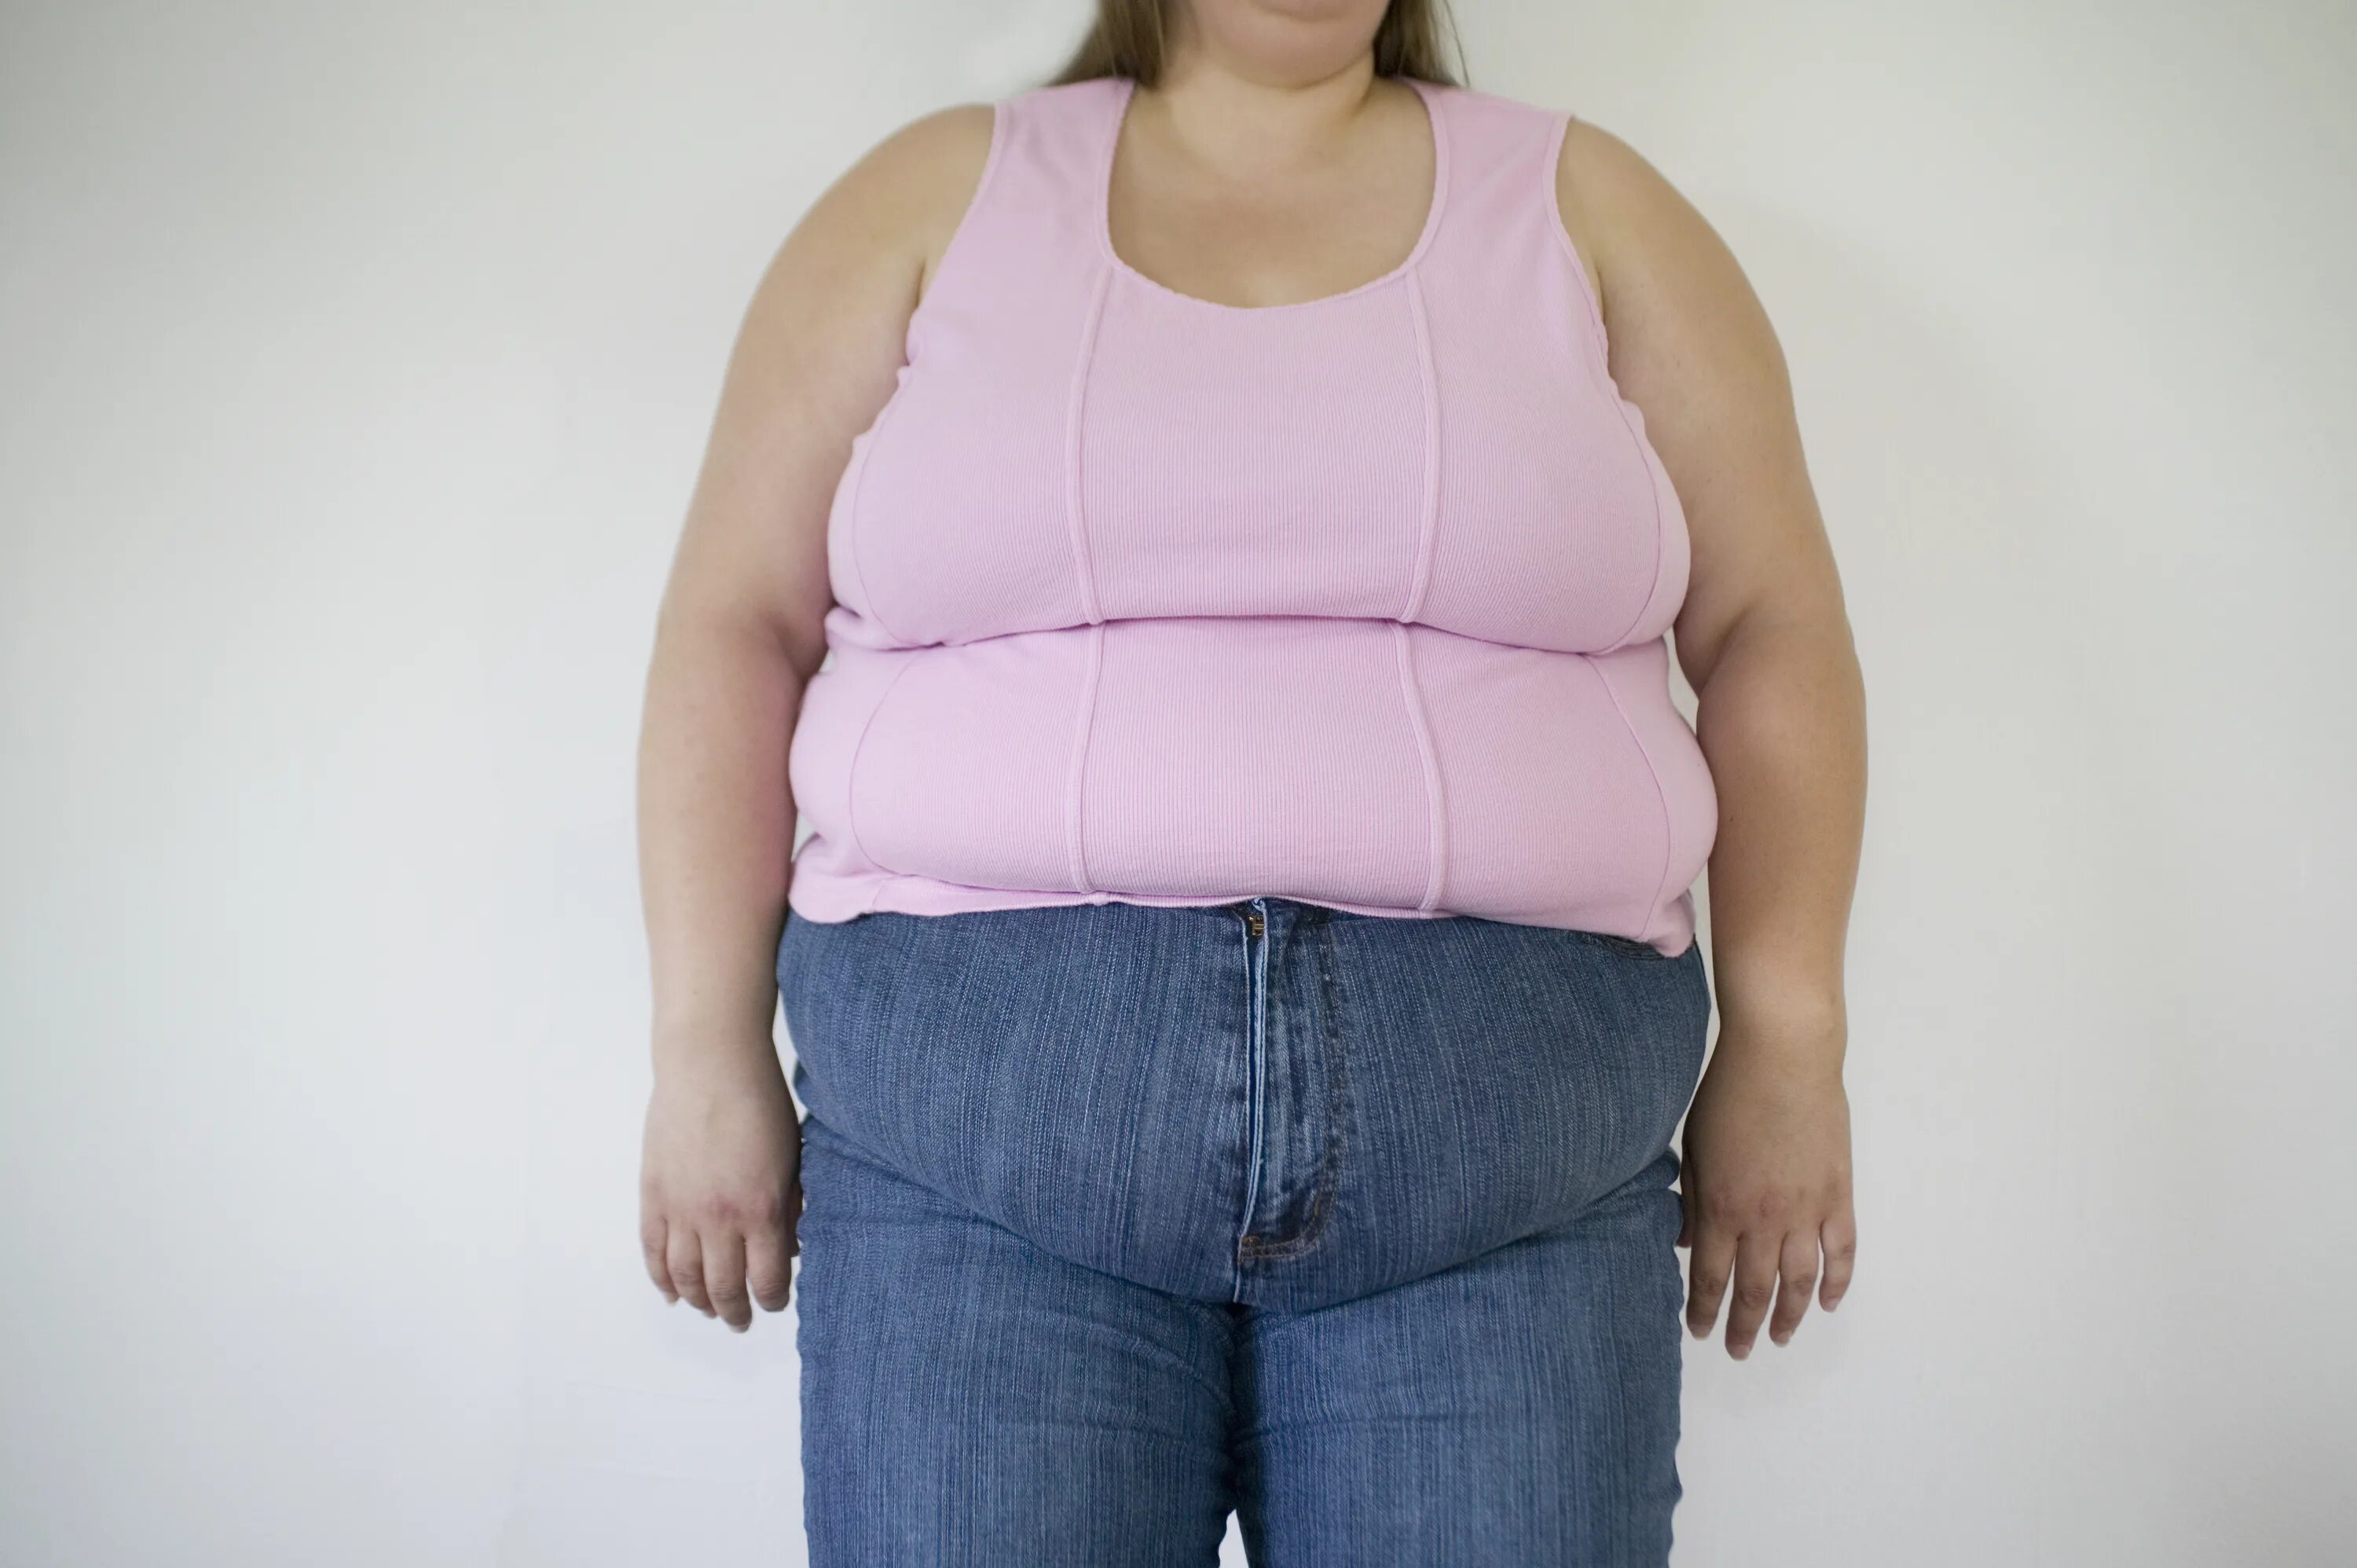 Сильная толстуха. Люди с избыточным весом. Ожирение у девушек. Женщина с лишним весом.